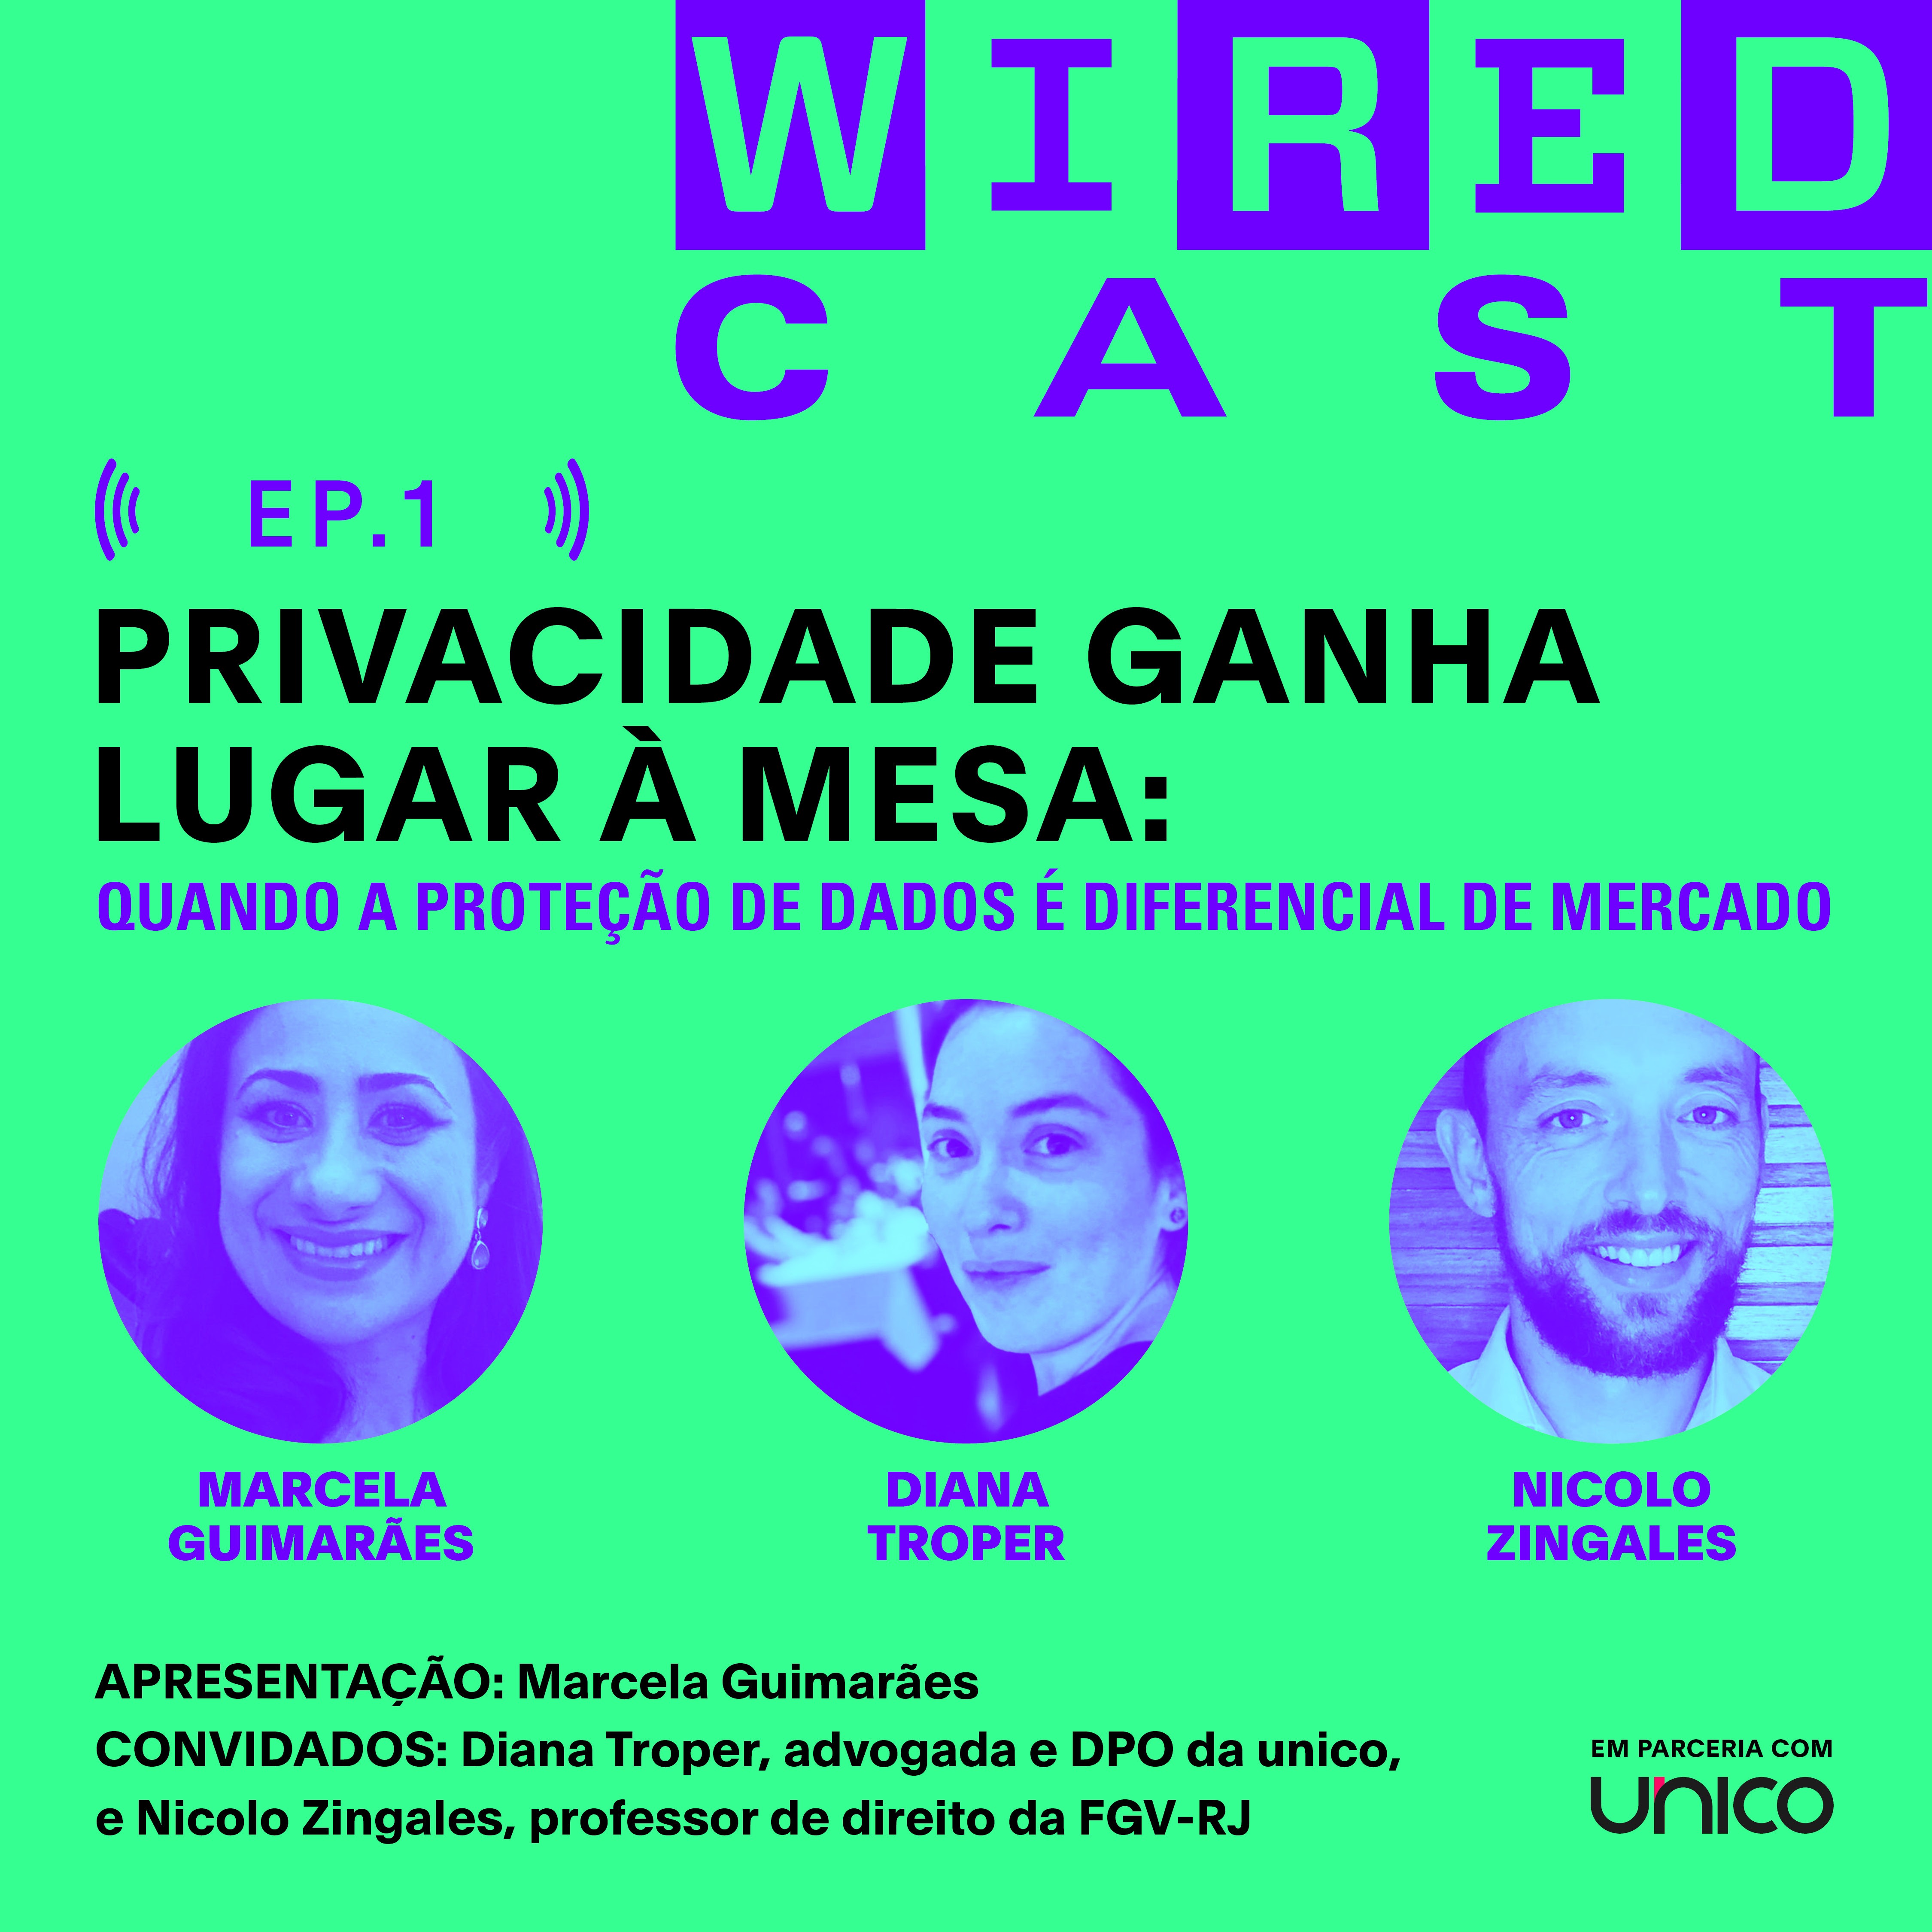 unico wiredcast (Foto: Divulgação)